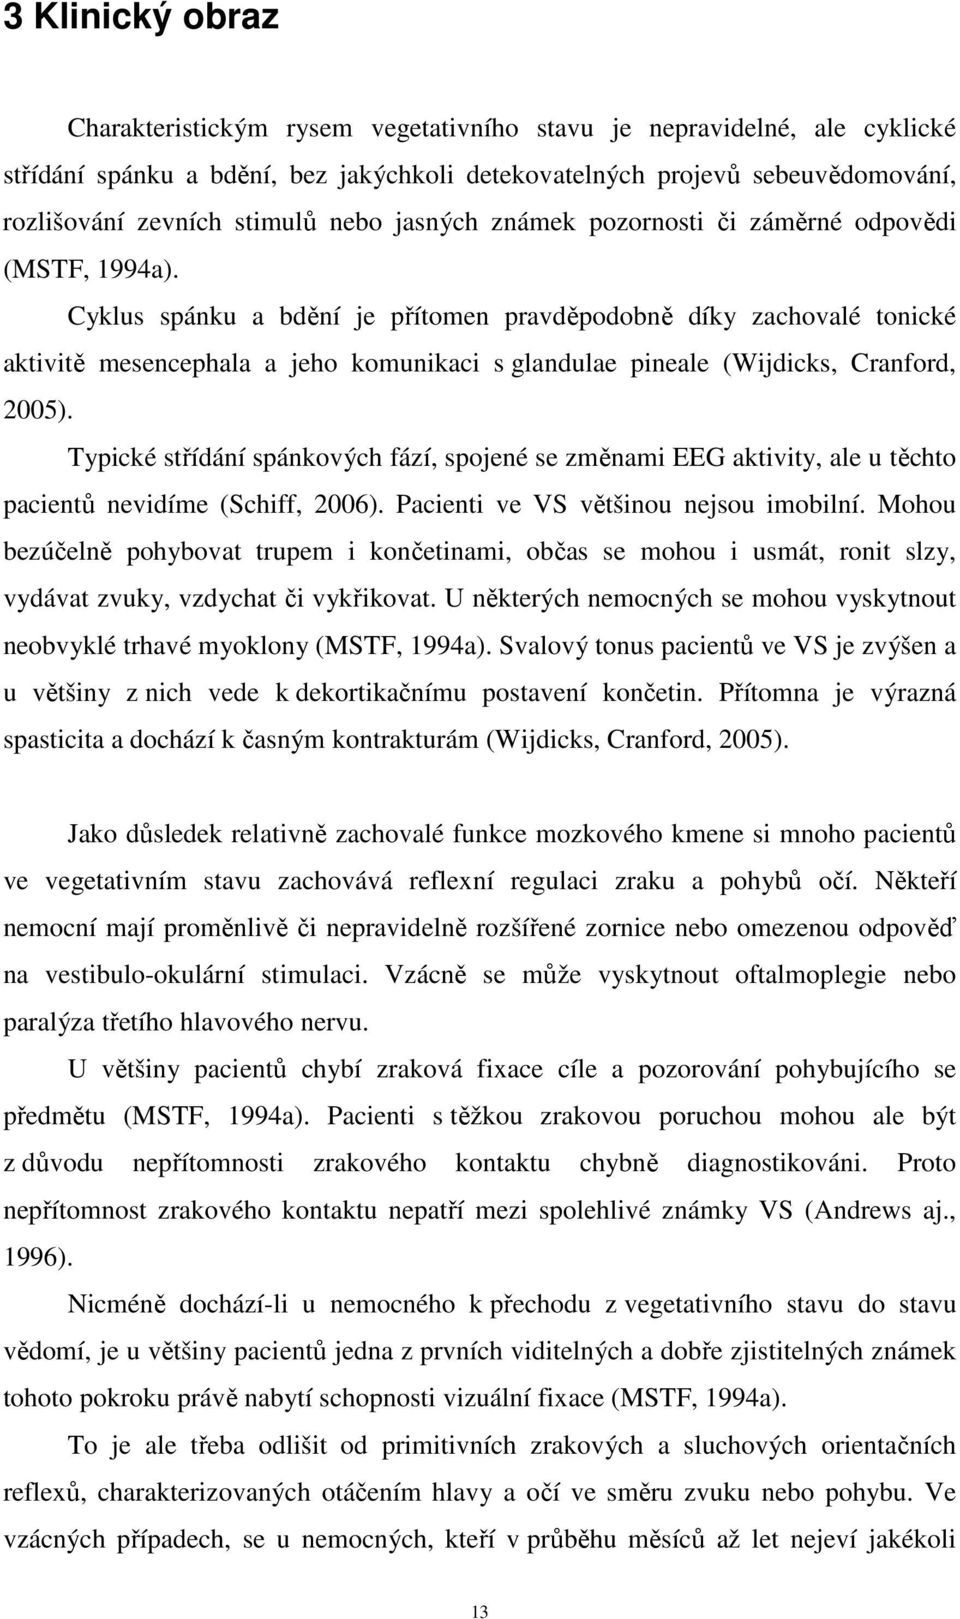 Cyklus spánku a bdění je přítomen pravděpodobně díky zachovalé tonické aktivitě mesencephala a jeho komunikaci s glandulae pineale (Wijdicks, Cranford, 2005).